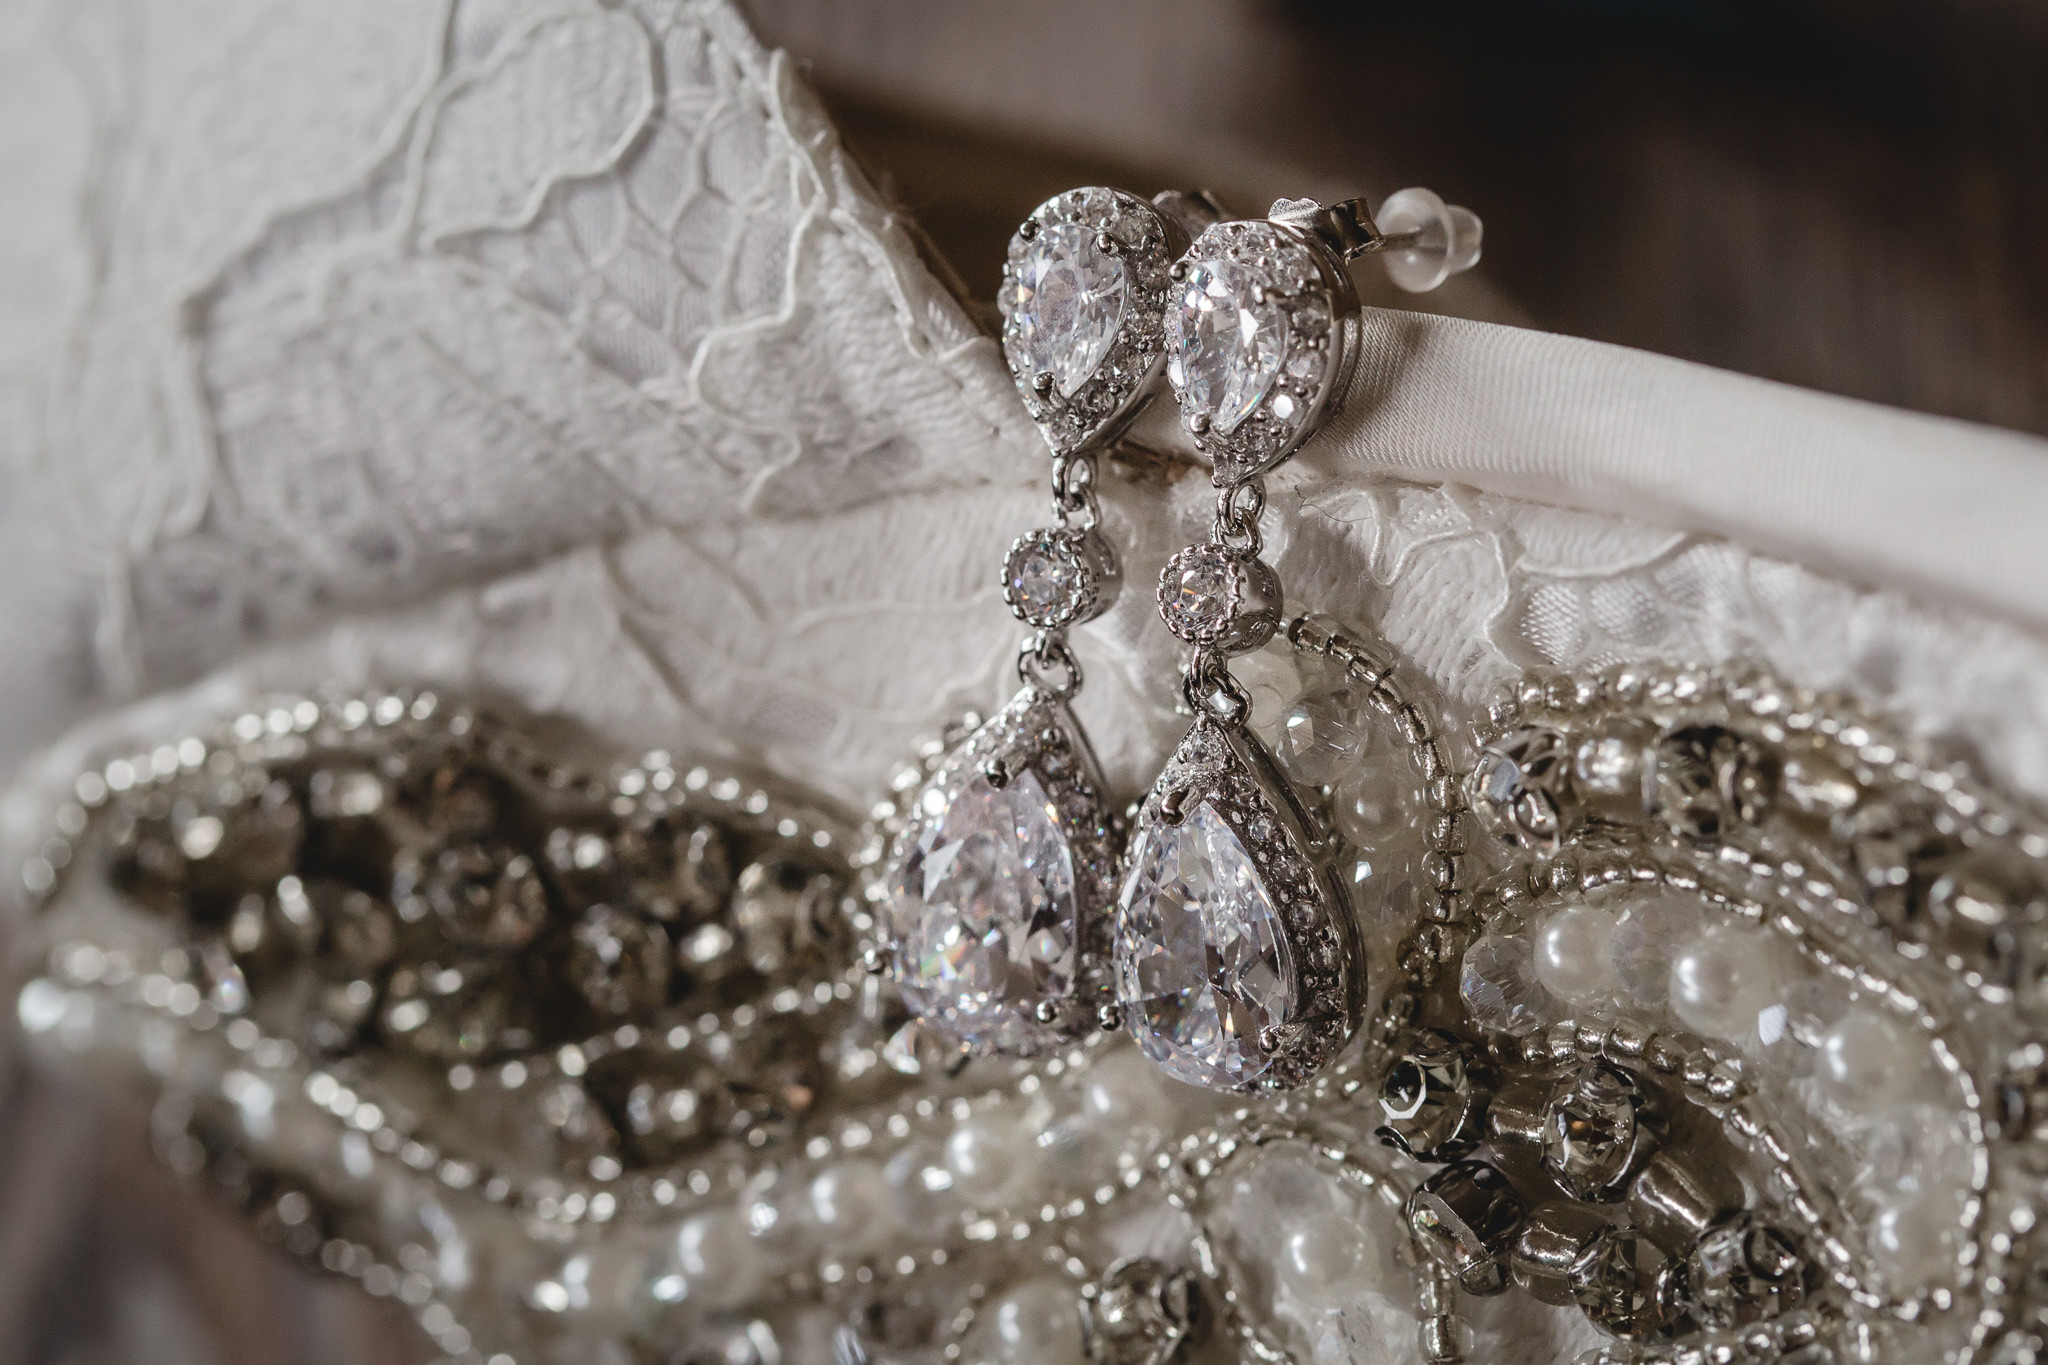 Diamond teardrop earrings for a bride's wedding day